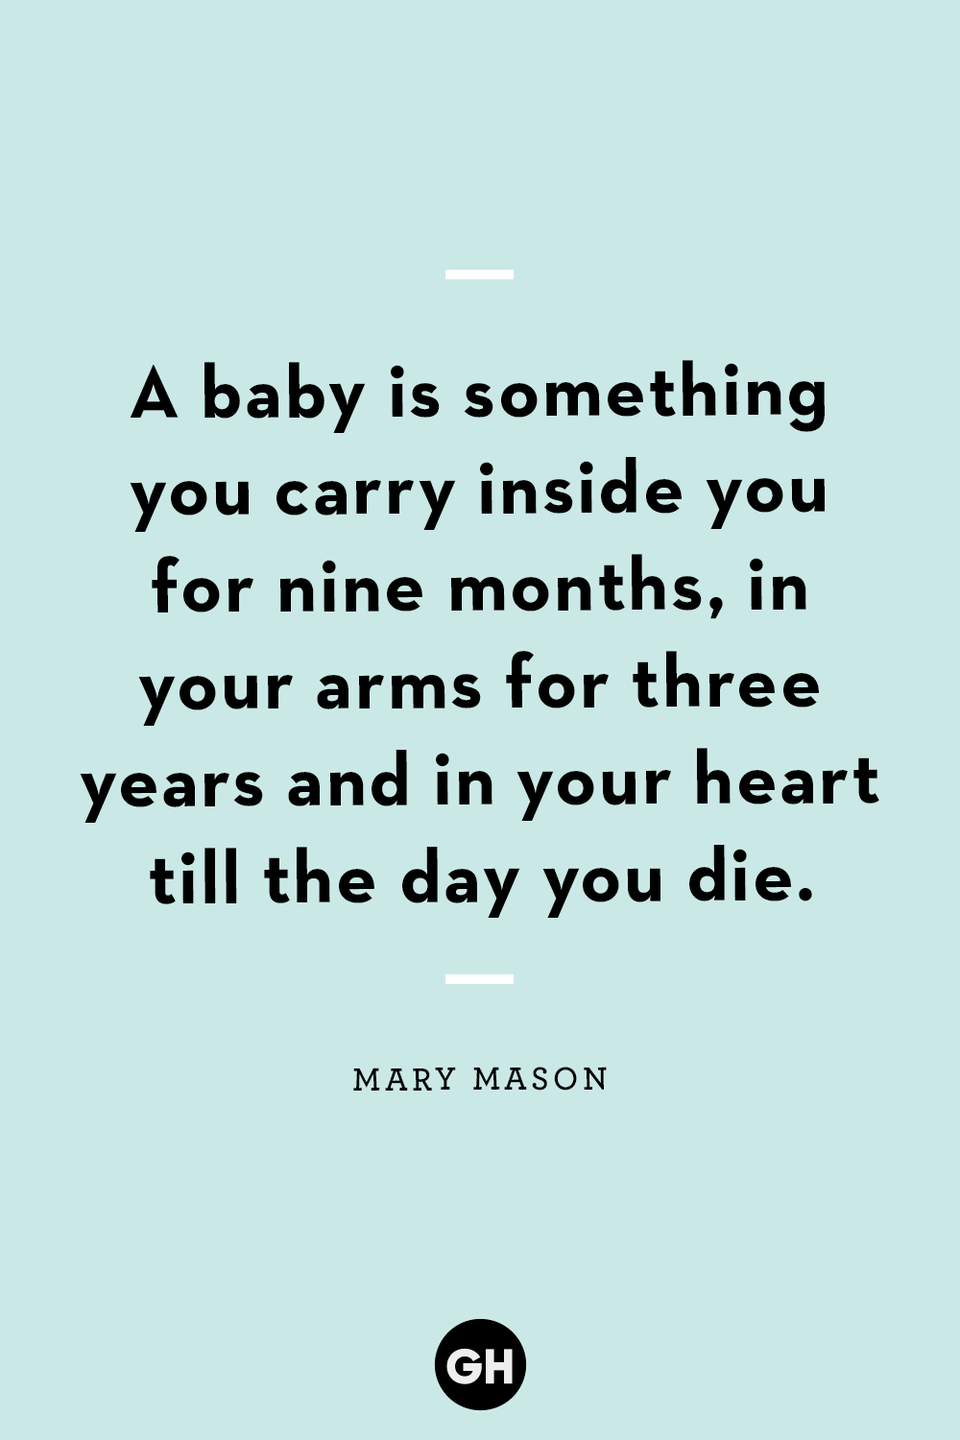 31) Mary Mason